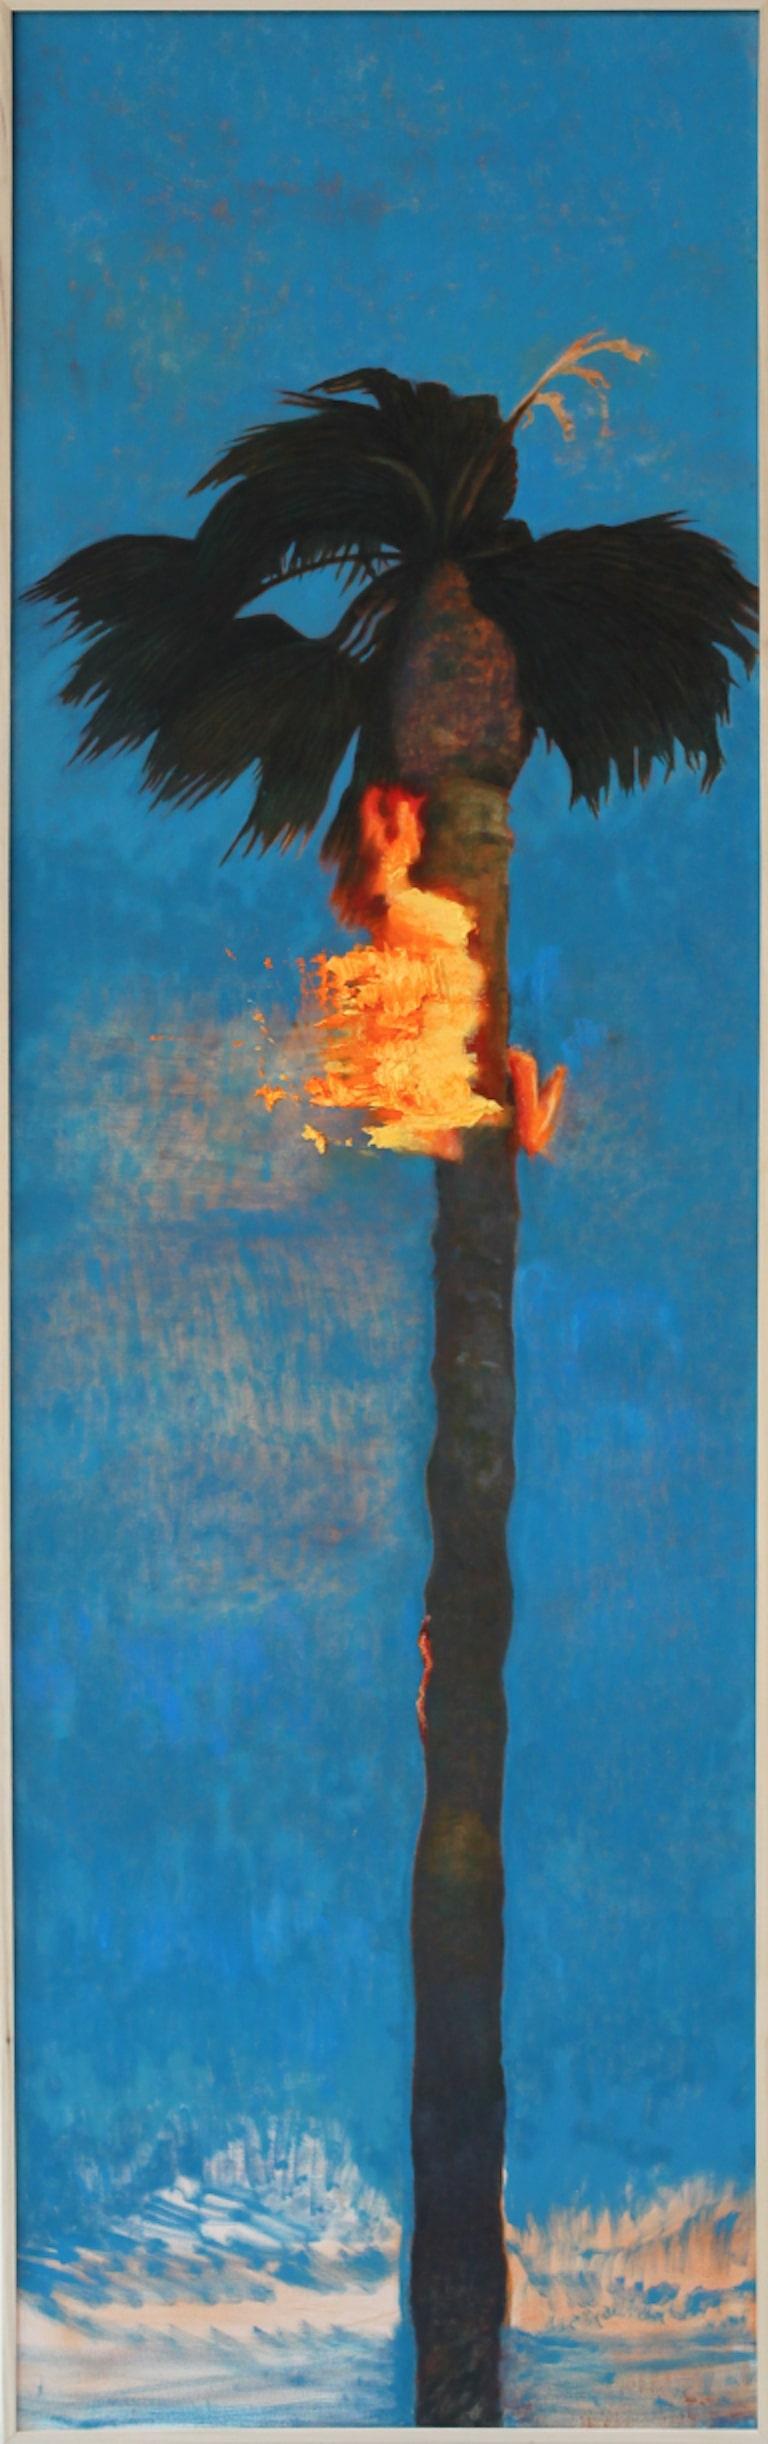 Perry Vàsquez Landscape Painting - Realistic Palm Tree Oil Painting, "Landscape 1"